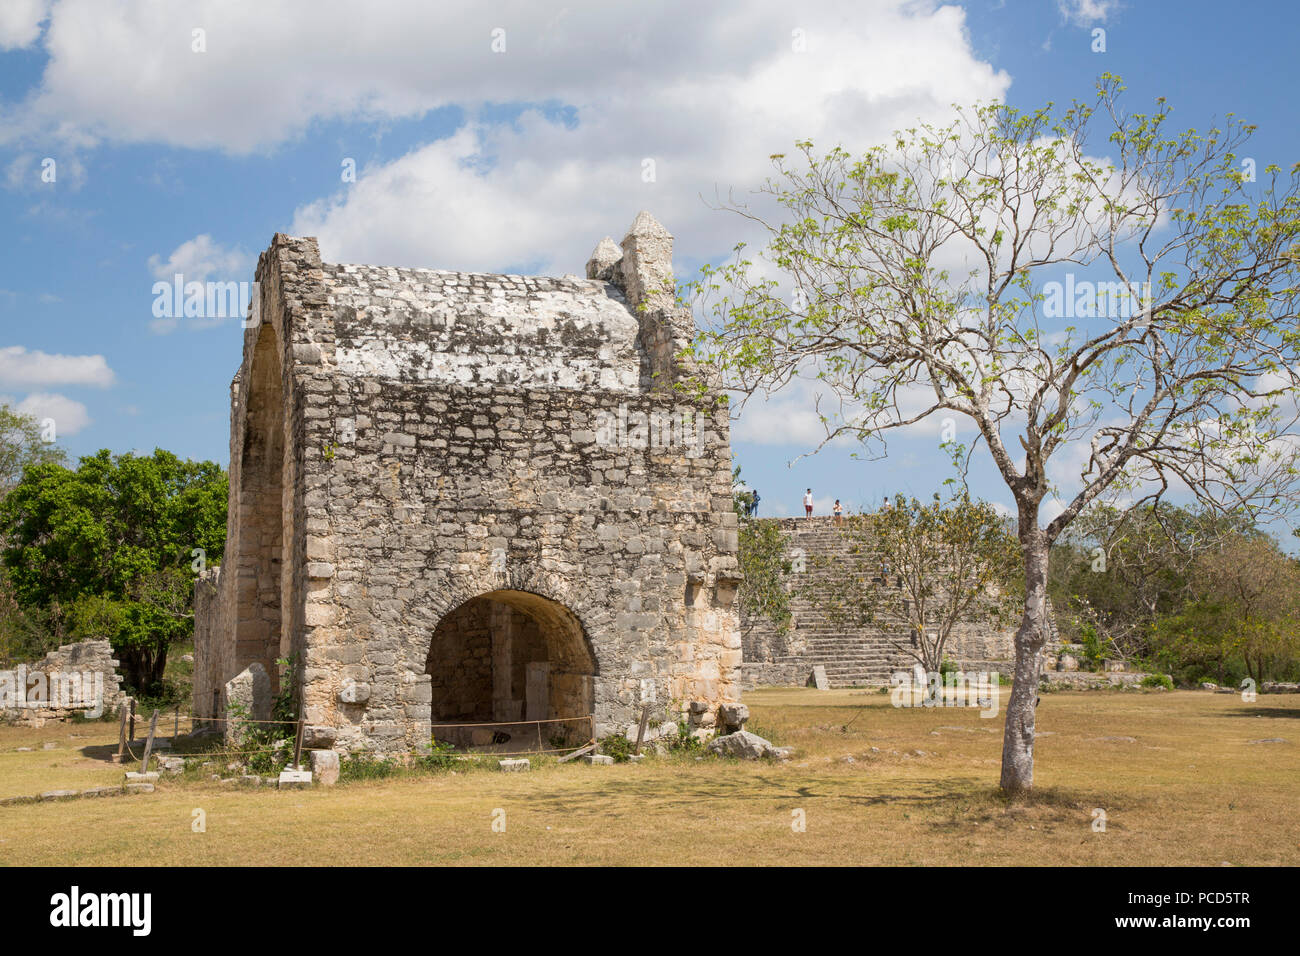 Öffnen Capilla (Kapelle), zwischen 1590 und 1600 gebaut, Dzibilchaltun Archäologische Stätte, in der Nähe von Merida, Yucatan, Mexiko, Nordamerika Stockfoto